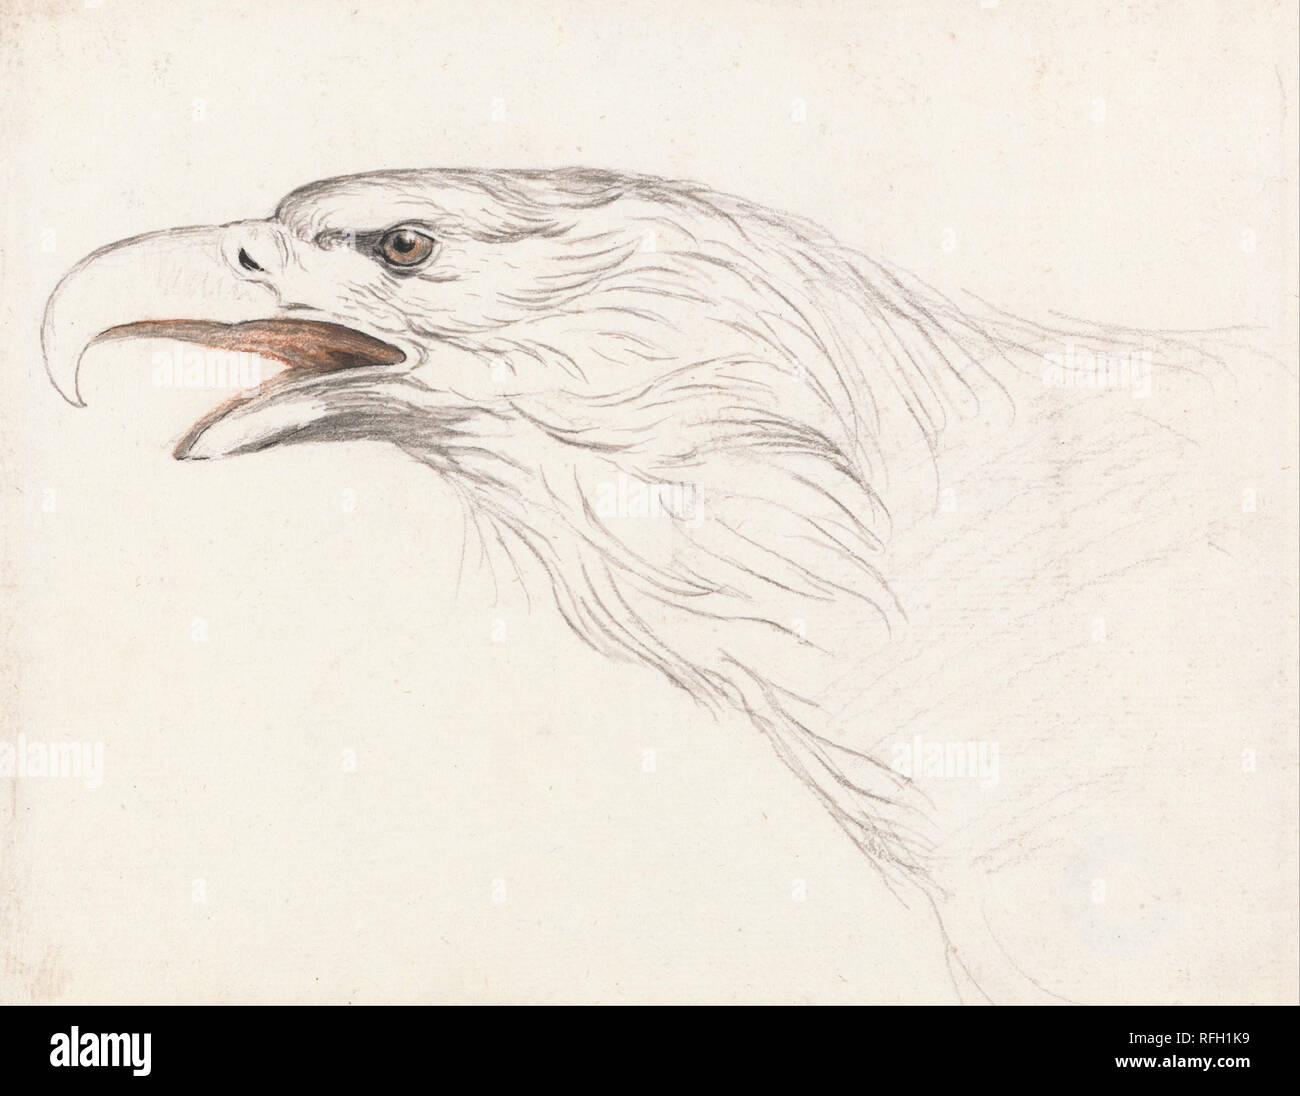 Cabeza de águila, mirando hacia la izquierda. Dibujo. Negro y rojo, la tiza  y el lápiz y tinta negra en medio, ligeramente texturado, sentado blanco de  papel. Altura: 165 mm ( in);